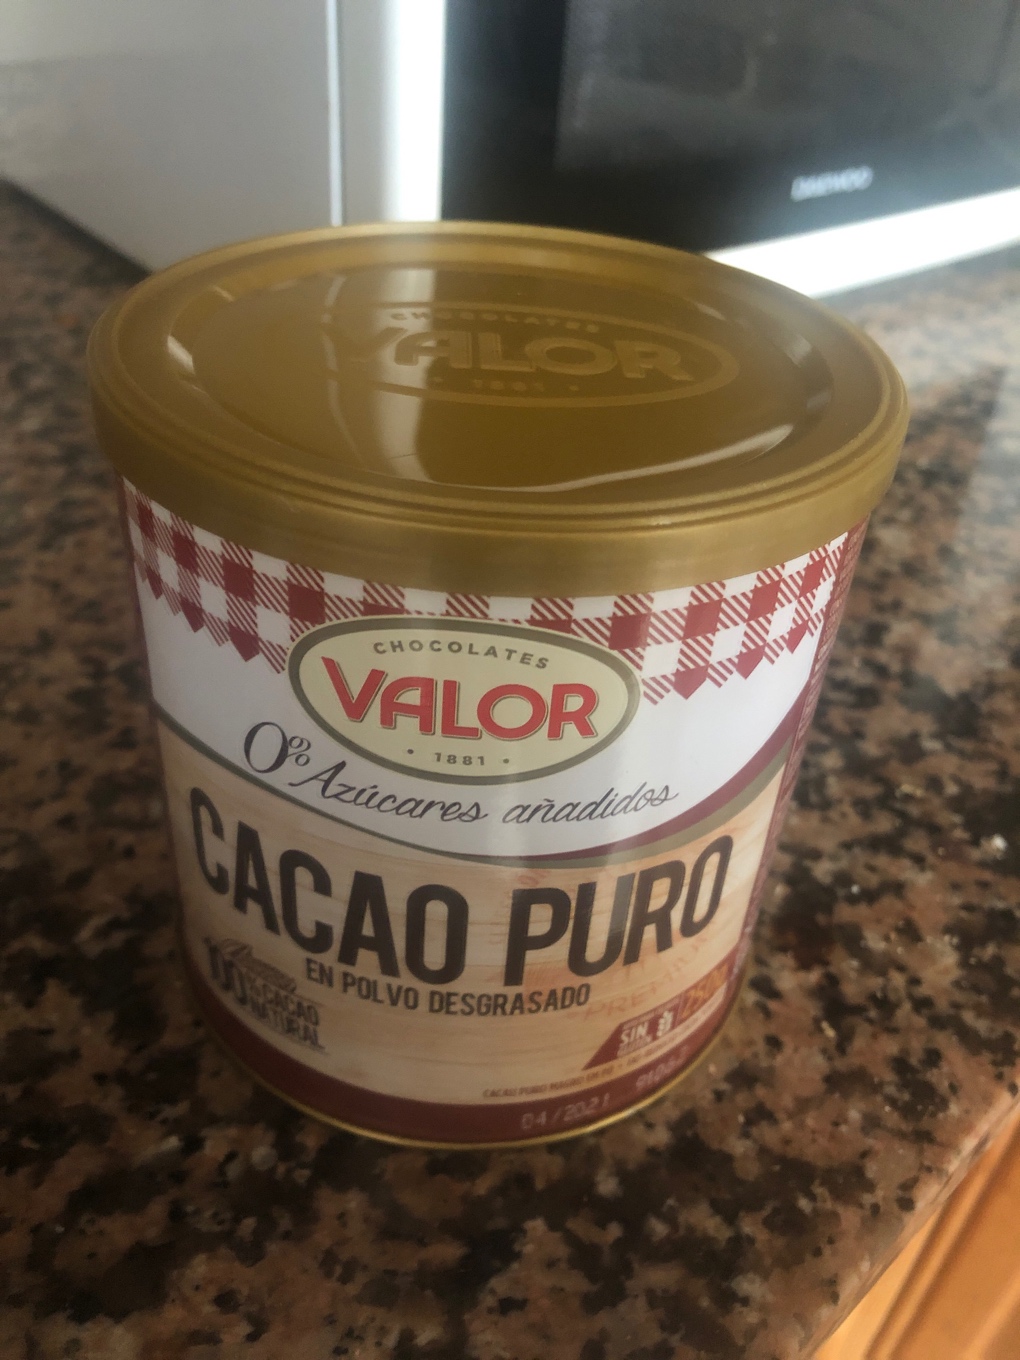 Cacao puro en polvo